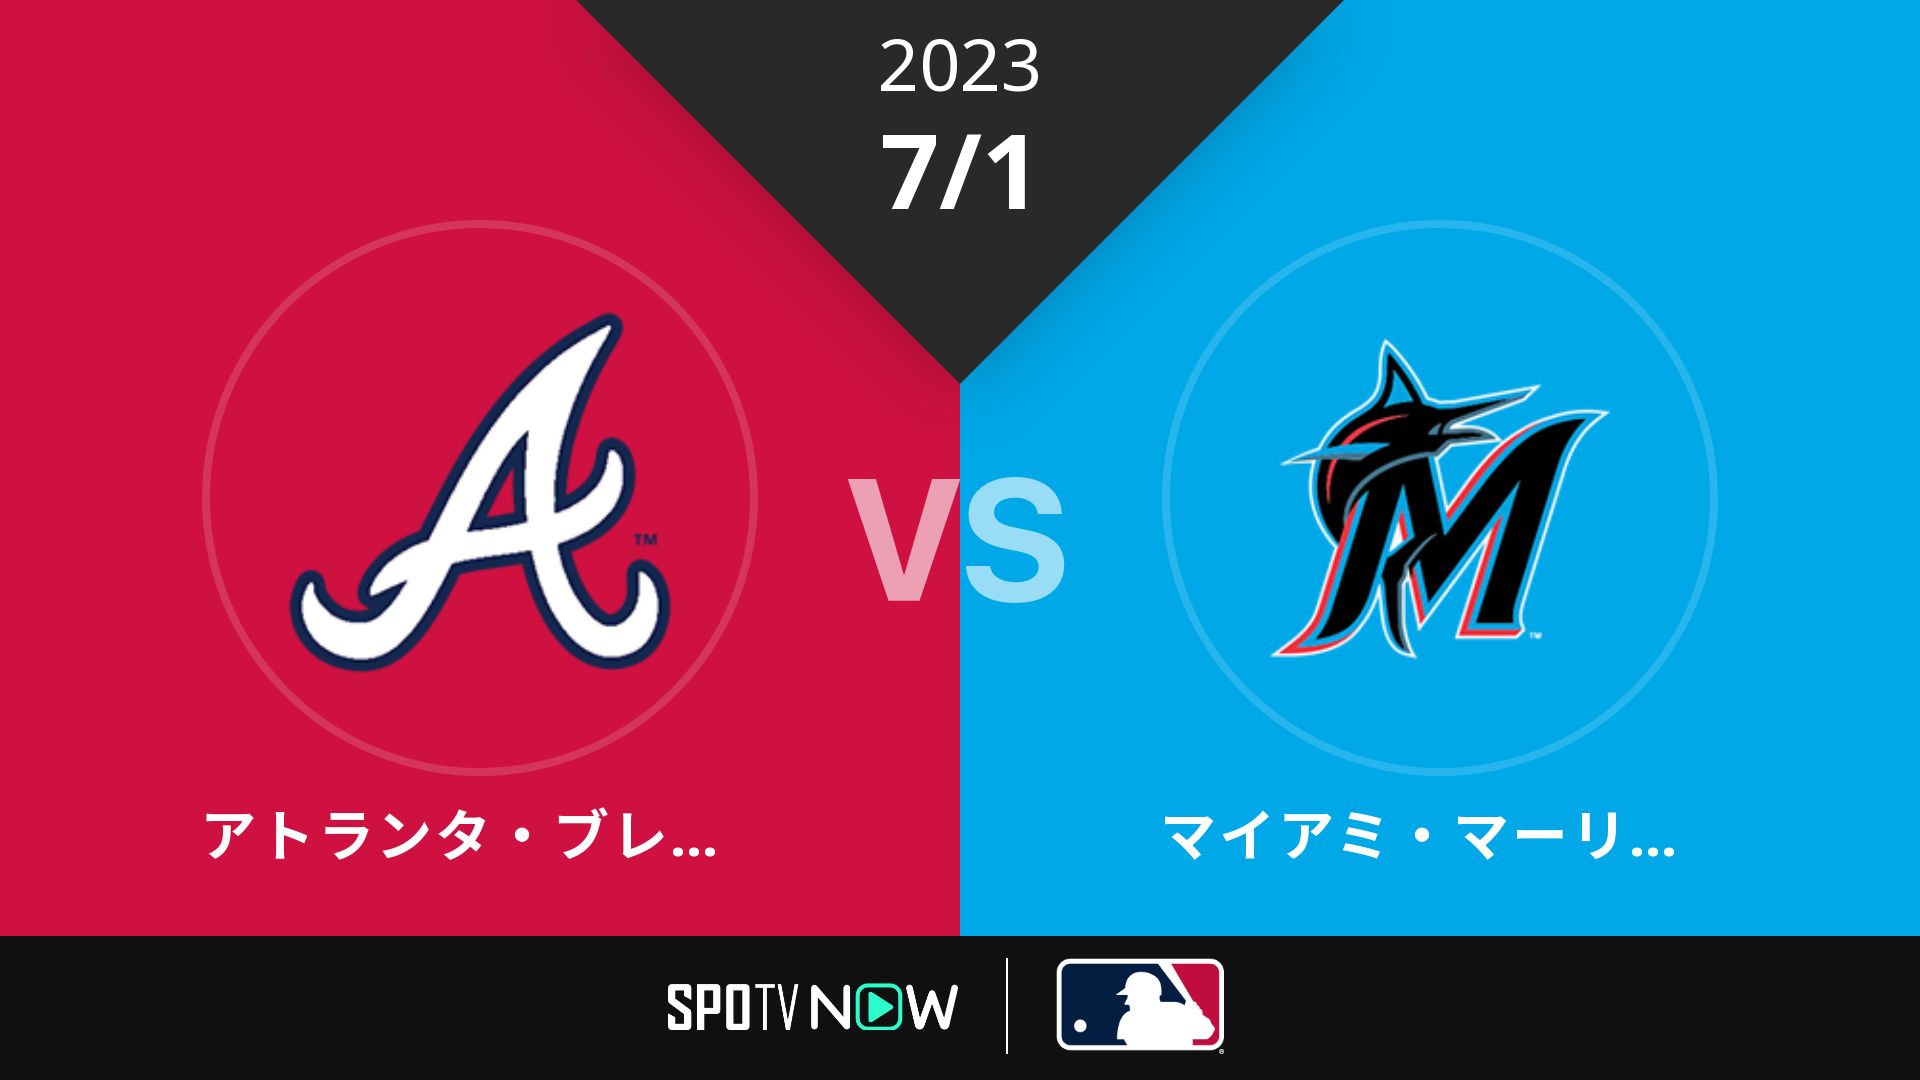 2023/7/1 ブレーブス vs マーリンズ [MLB]